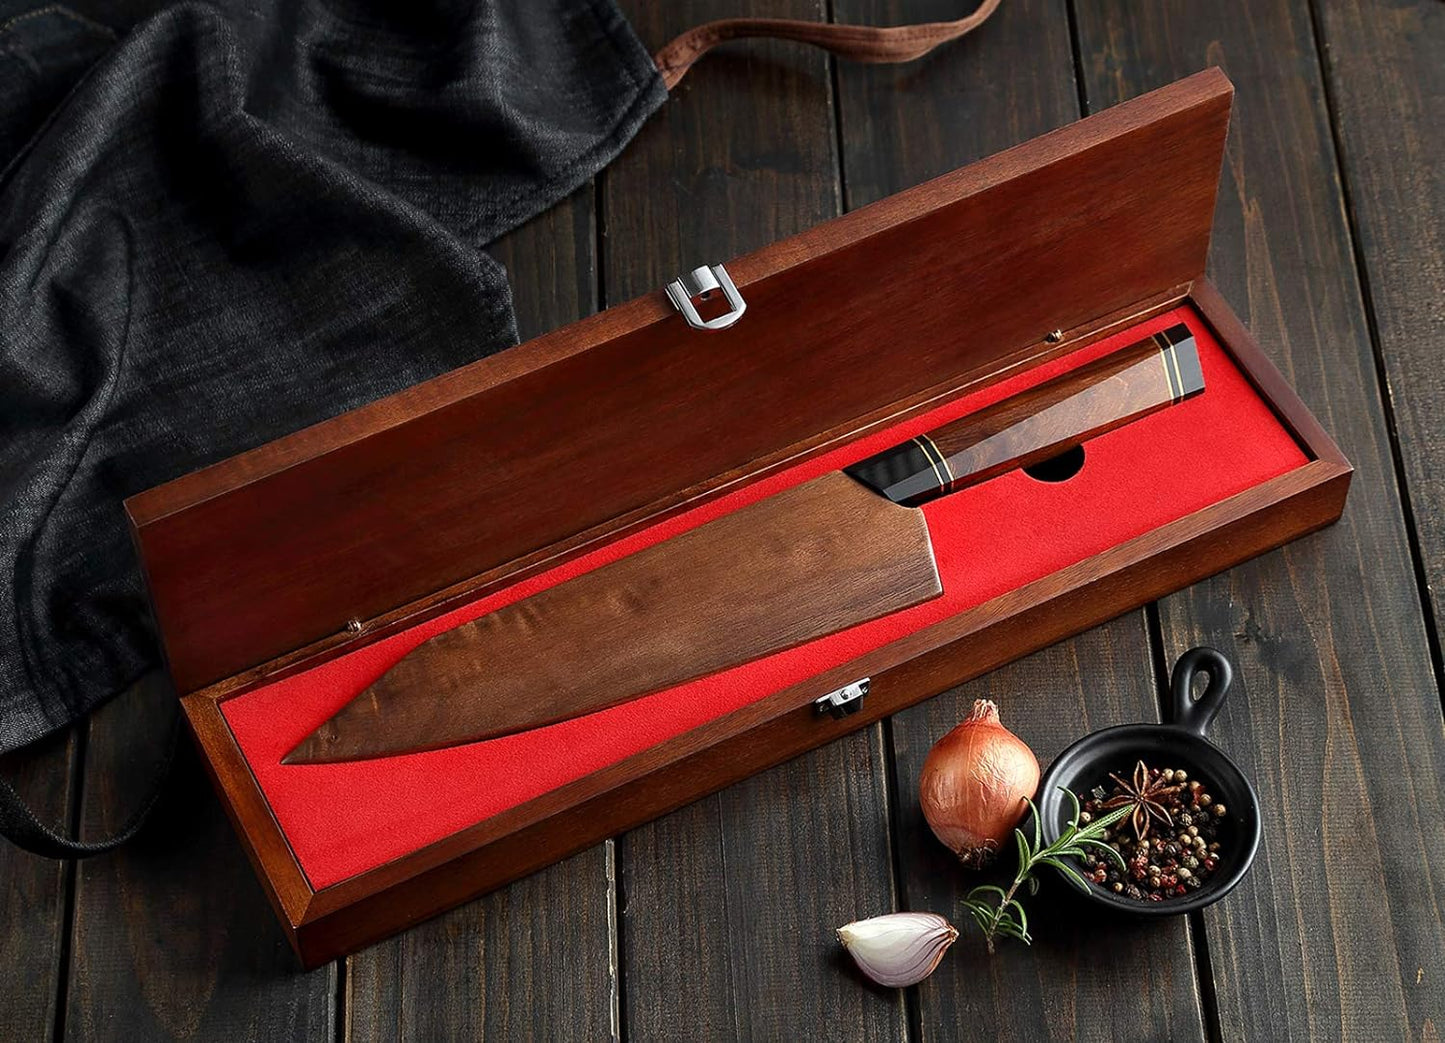 KD Kiritsuke Chef Knife 110 Layers Damascus Steel with Wooden Sheath & Box